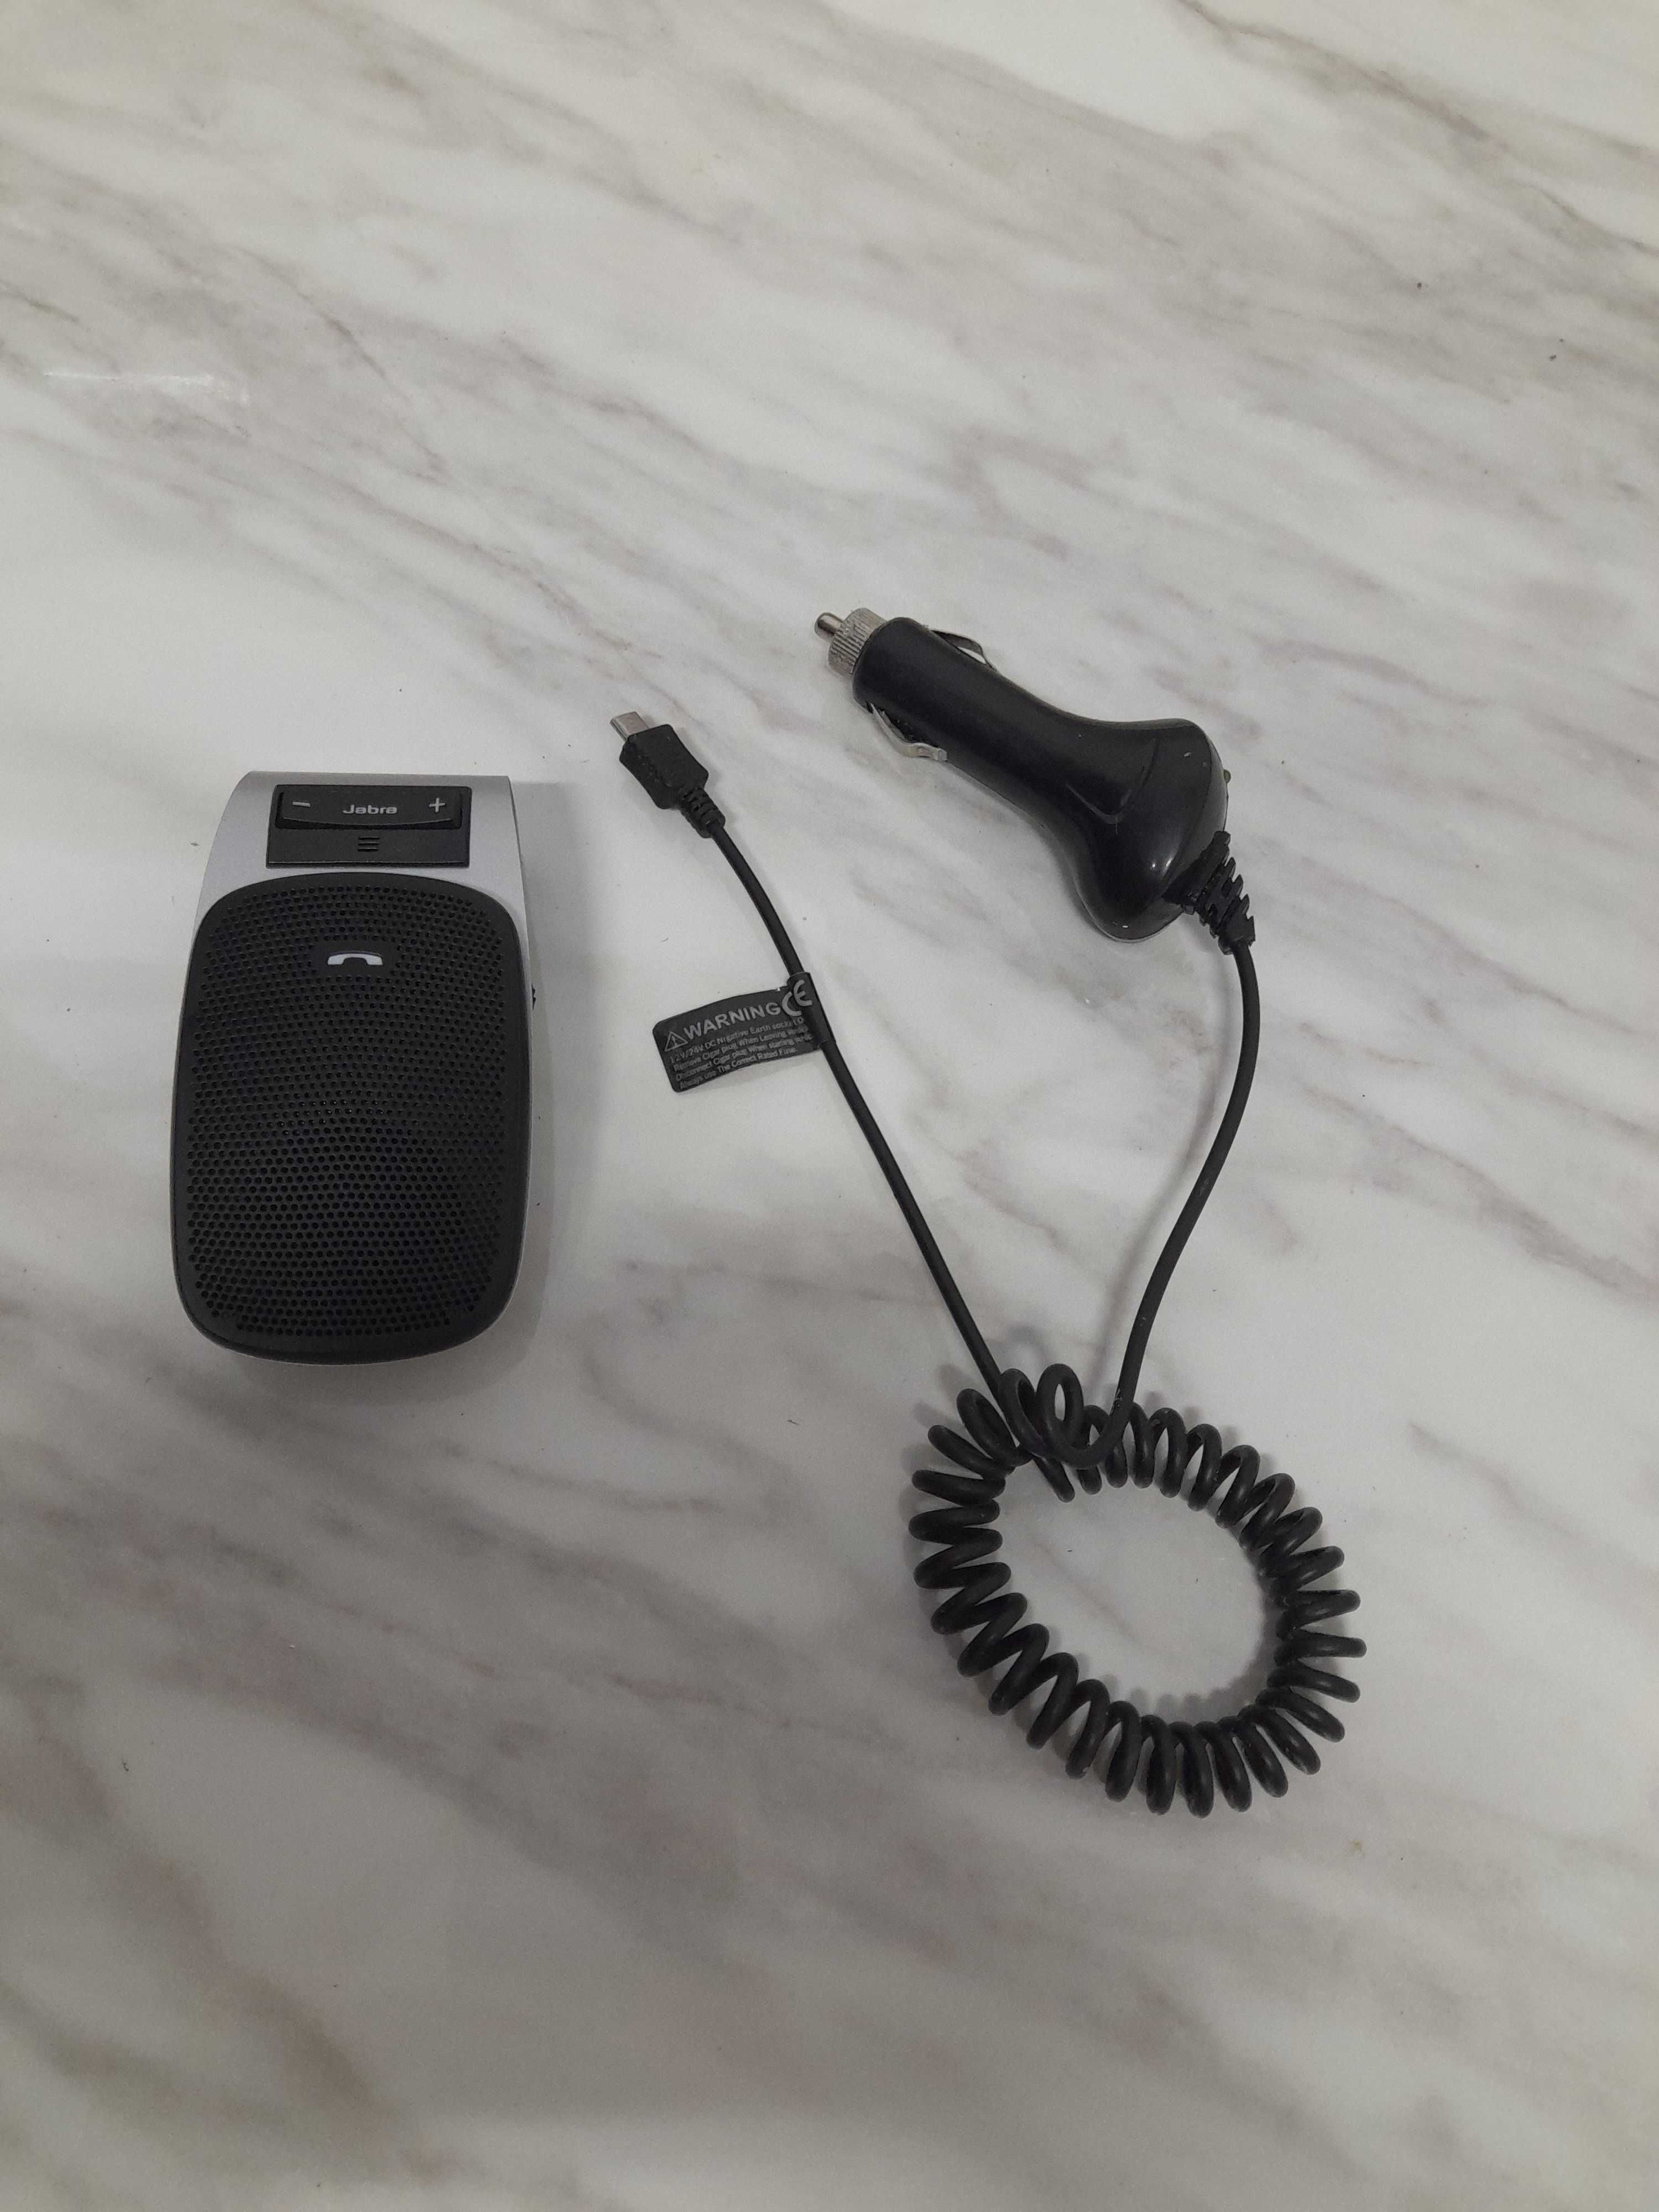 Bezprzewodowy zestaw słuchawkowy Bluetooth Jabra Drive